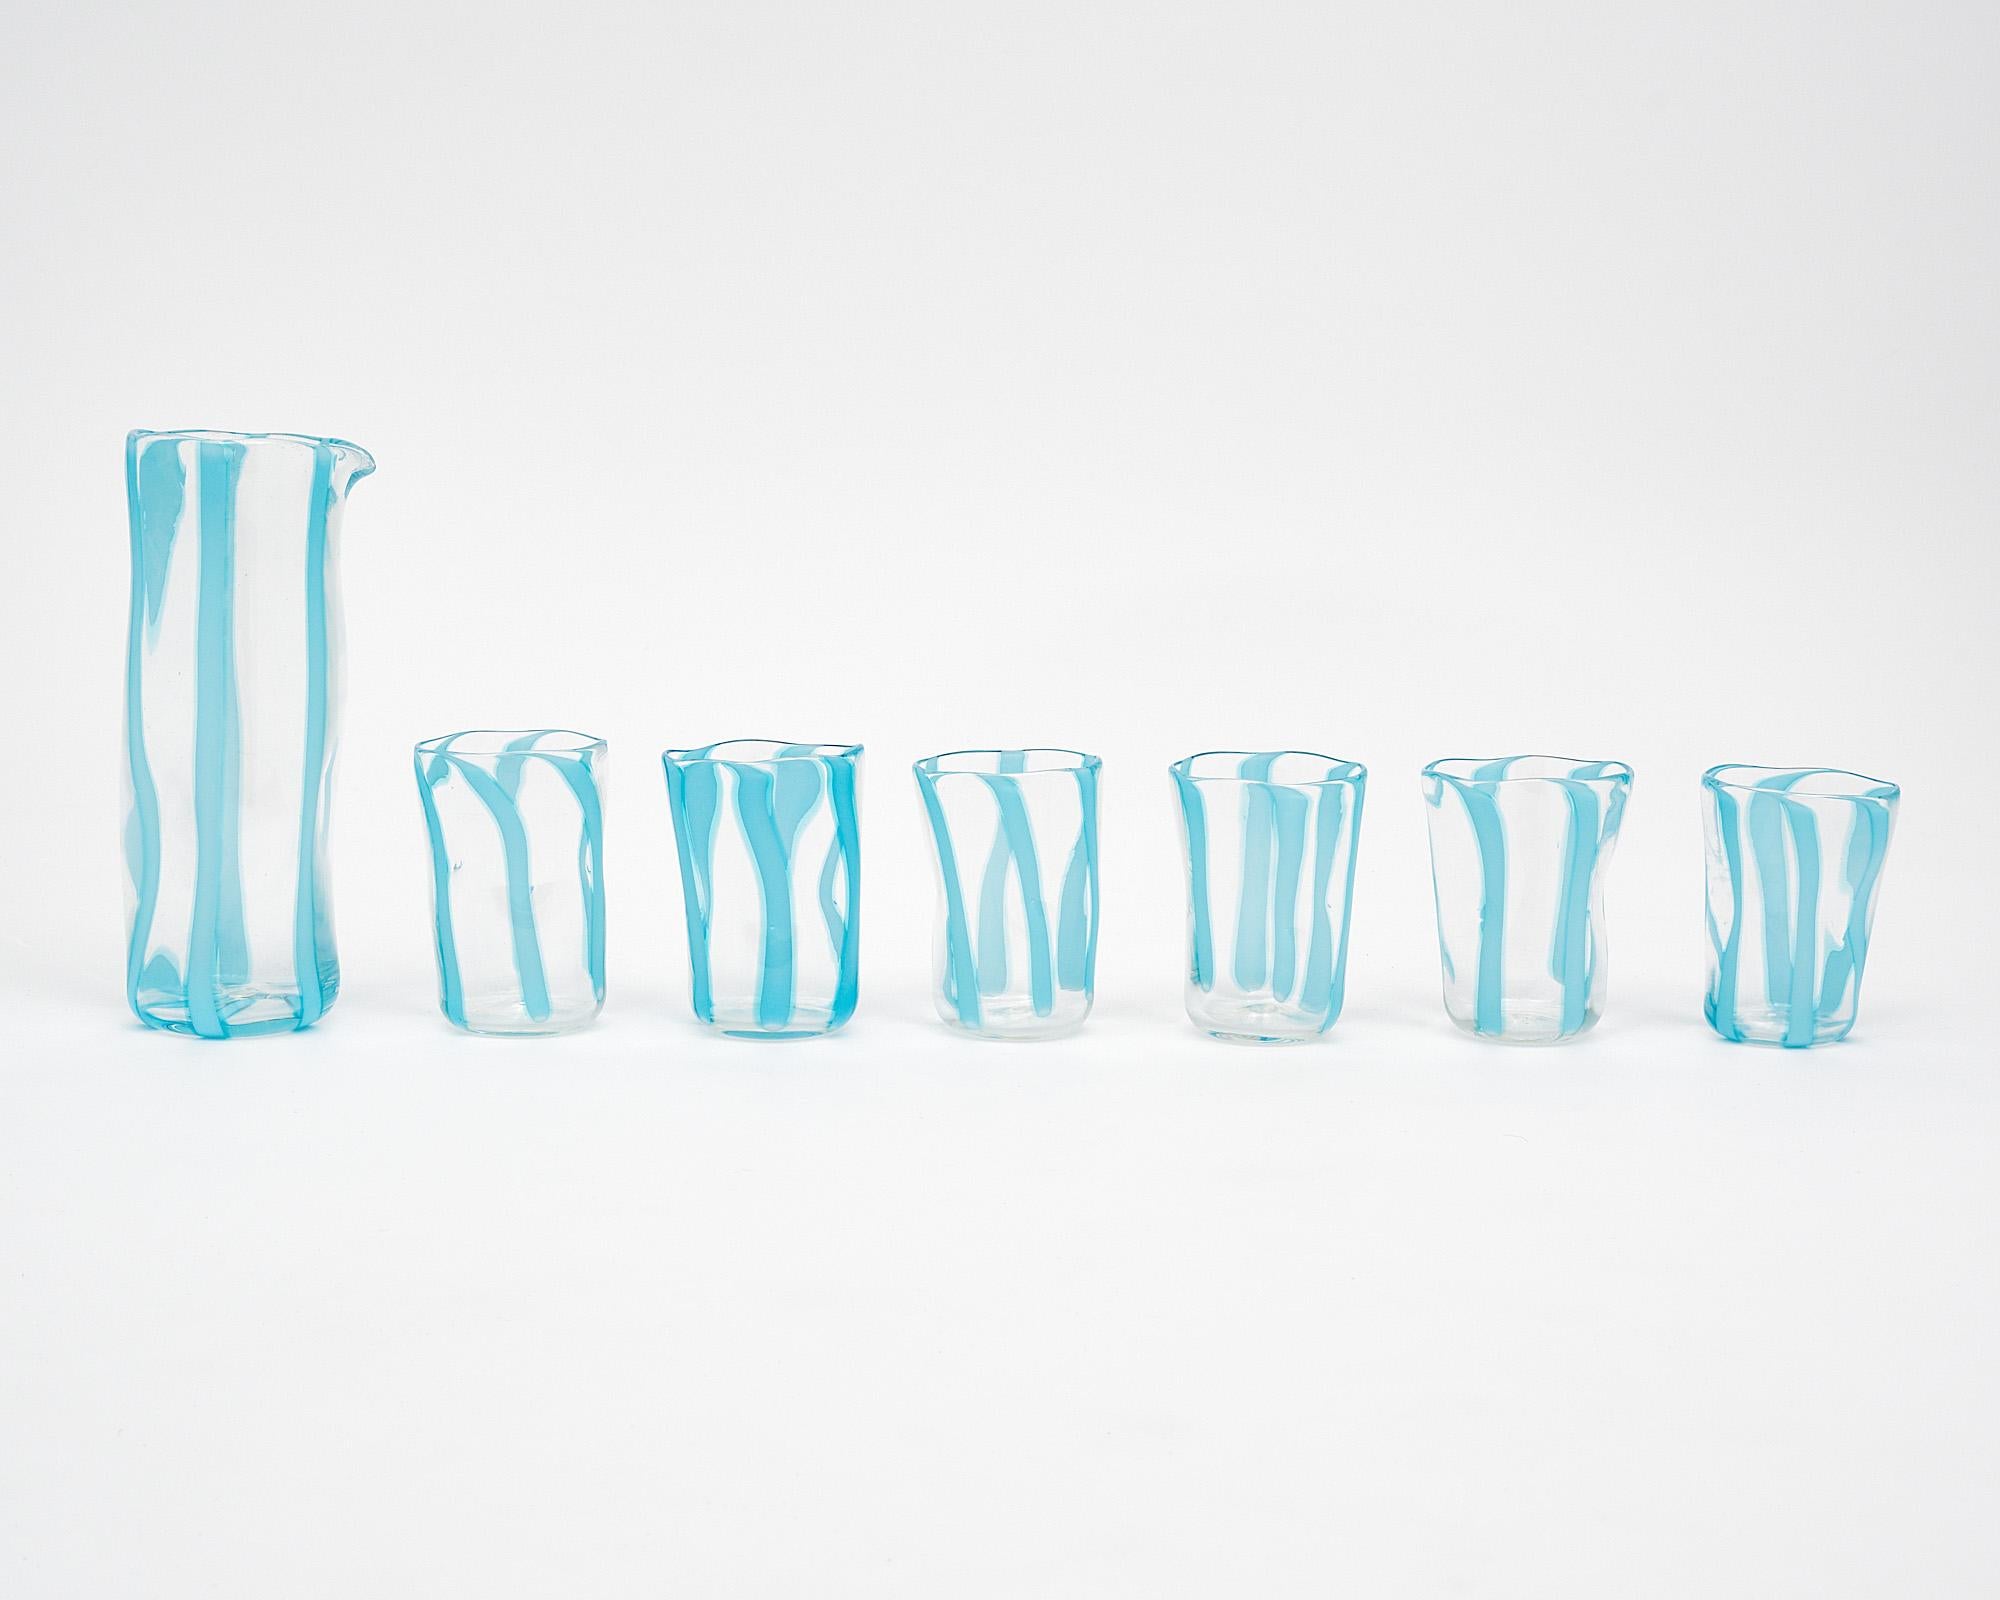 Set aus sechs Murano-Glasbechern und passender Karaffe. Dieses Set wird vollständig aus mundgeblasenem Glas auf der Insel Murano bei Venedig hergestellt. Sie haben ein transparentes Glas mit himmelblauen Streifen. Wir lieben die organischen Formen